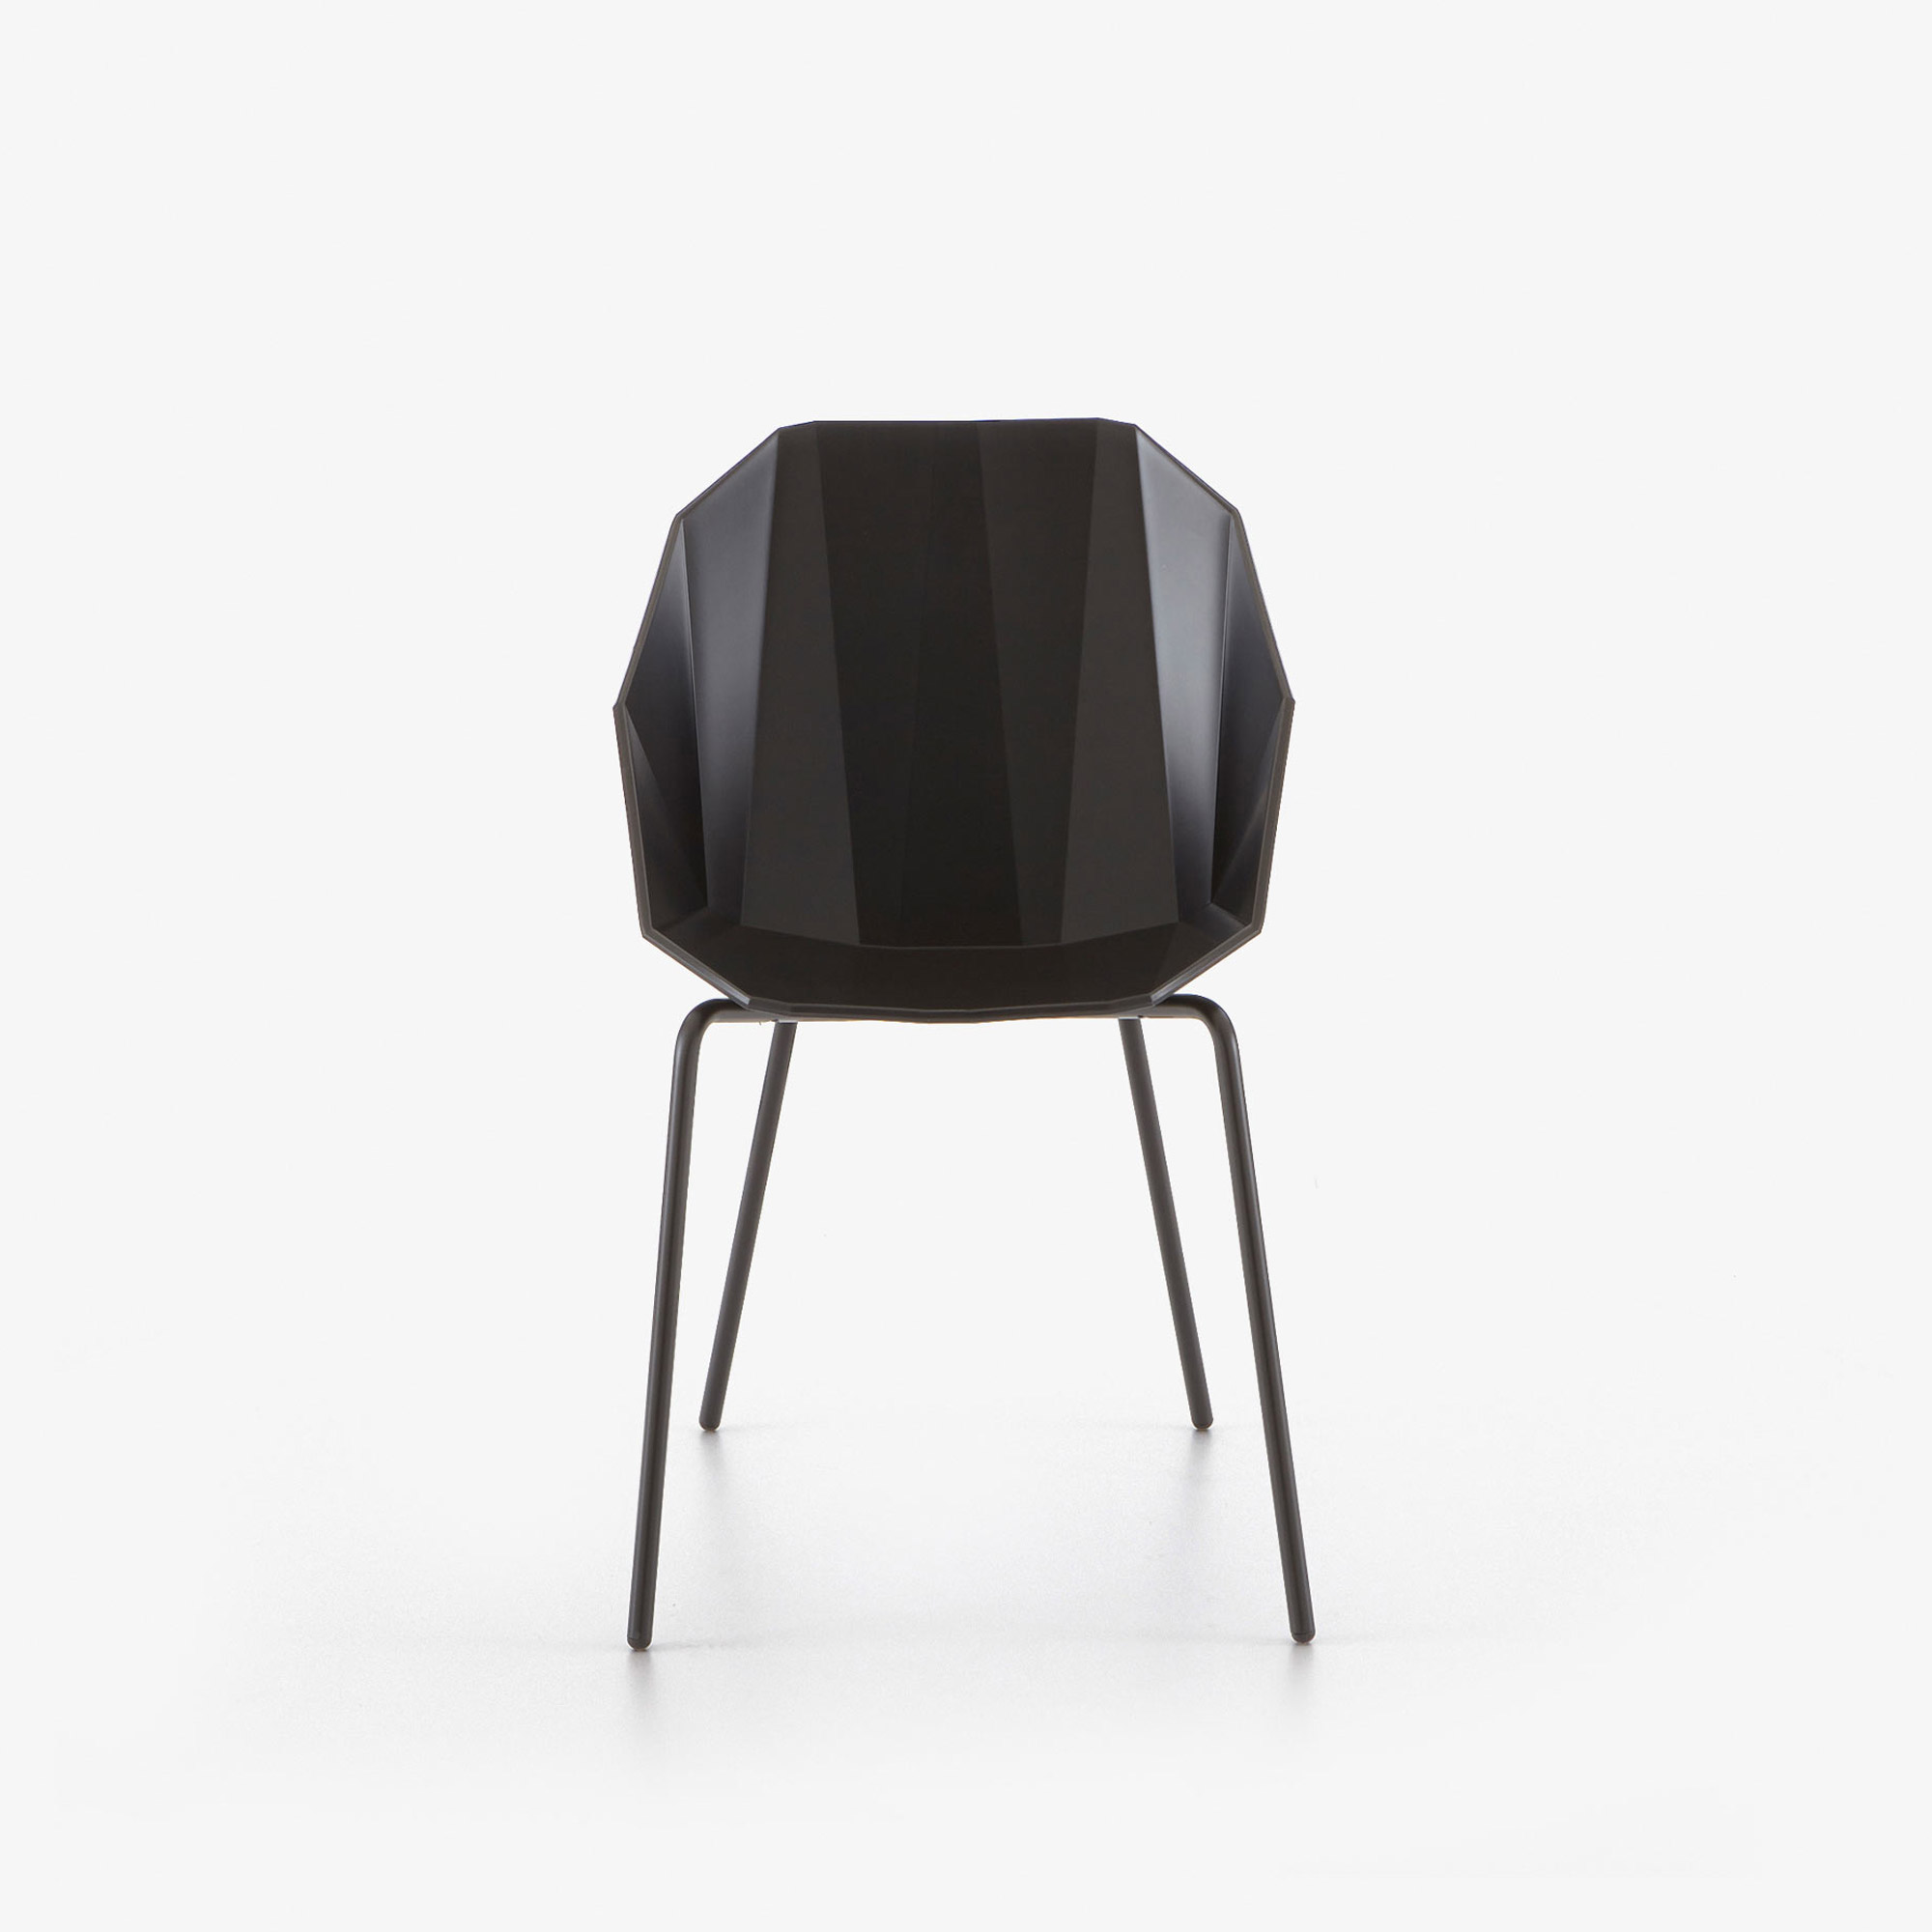 Image 椅子/桥形结构 黑色 黑色烤水性漆底座